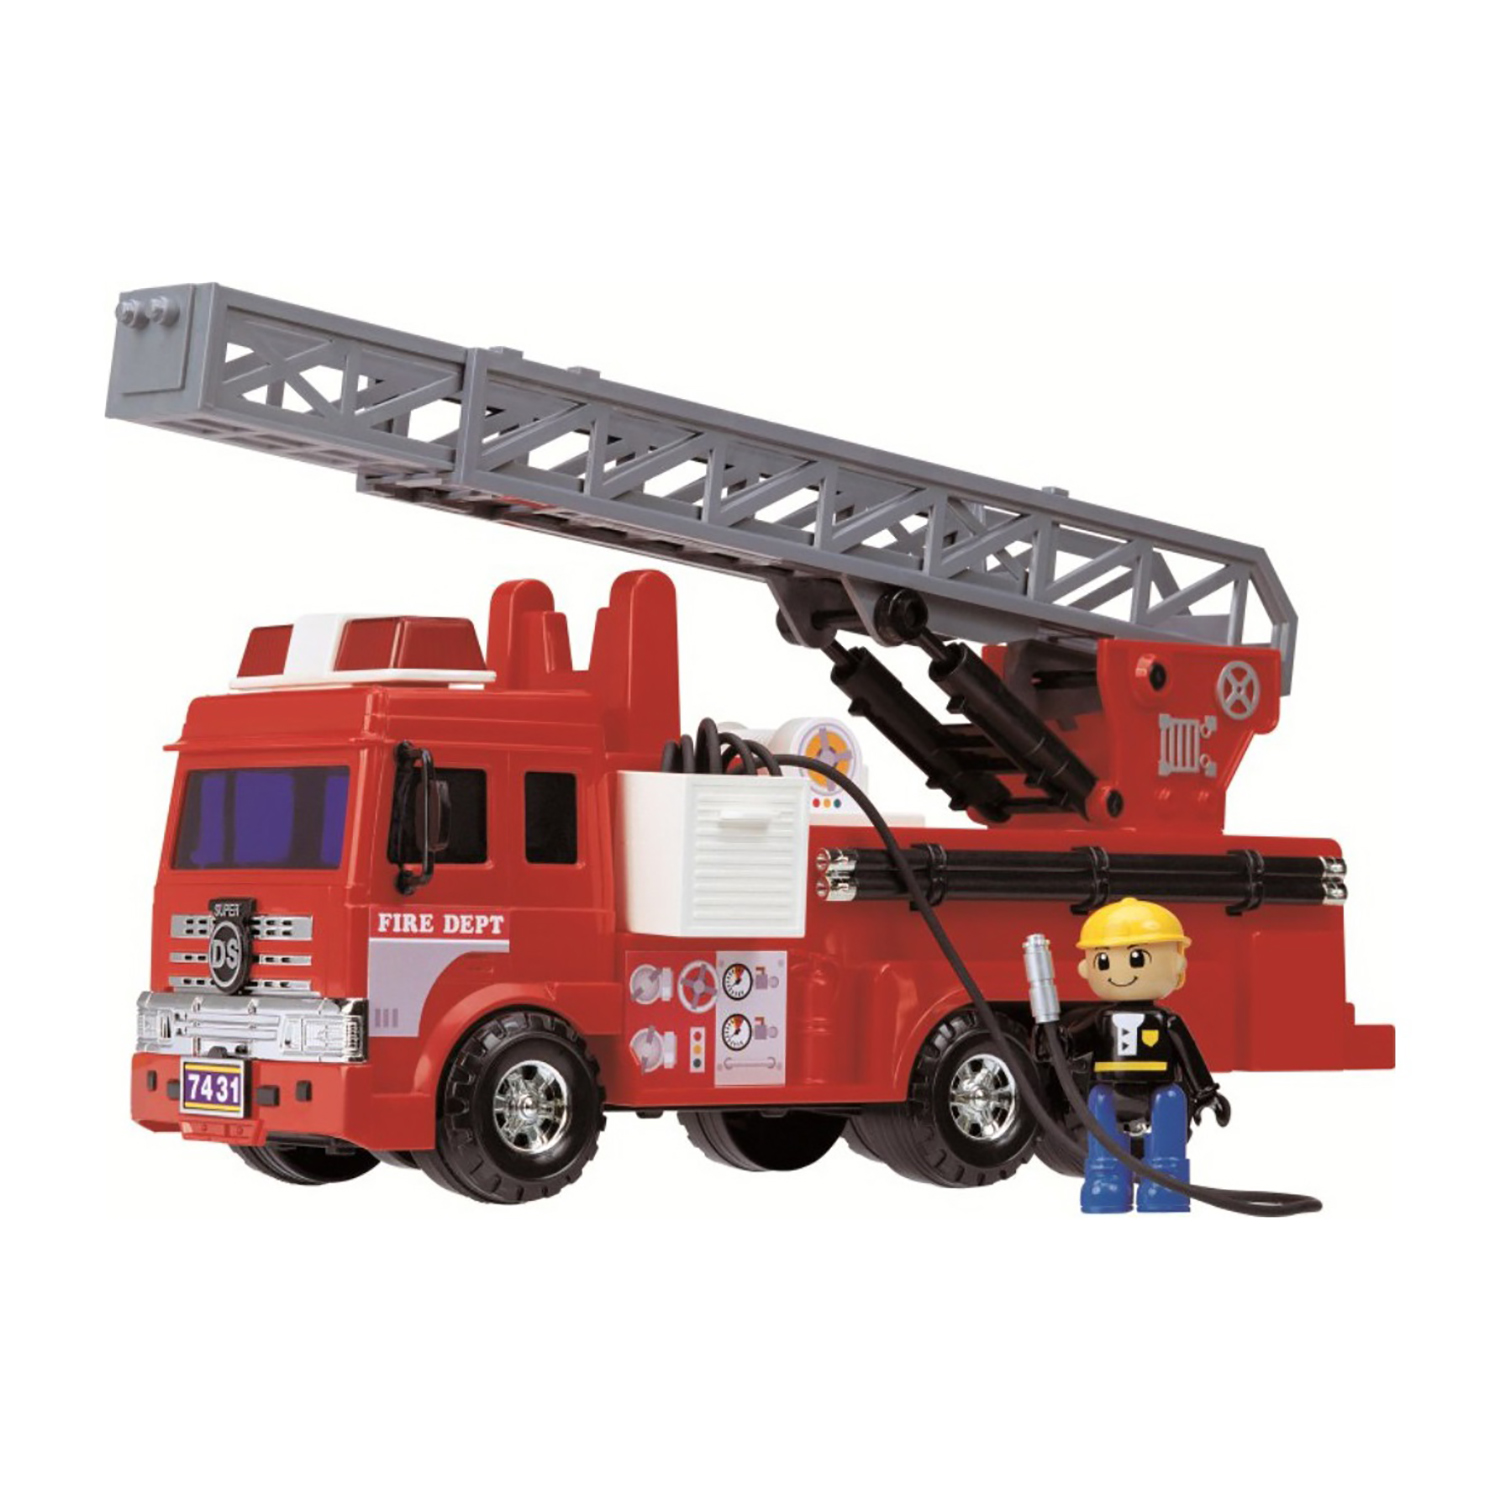 Игровой набор Дасунг Пожарная машина со шлангом и фигуркой, 40377